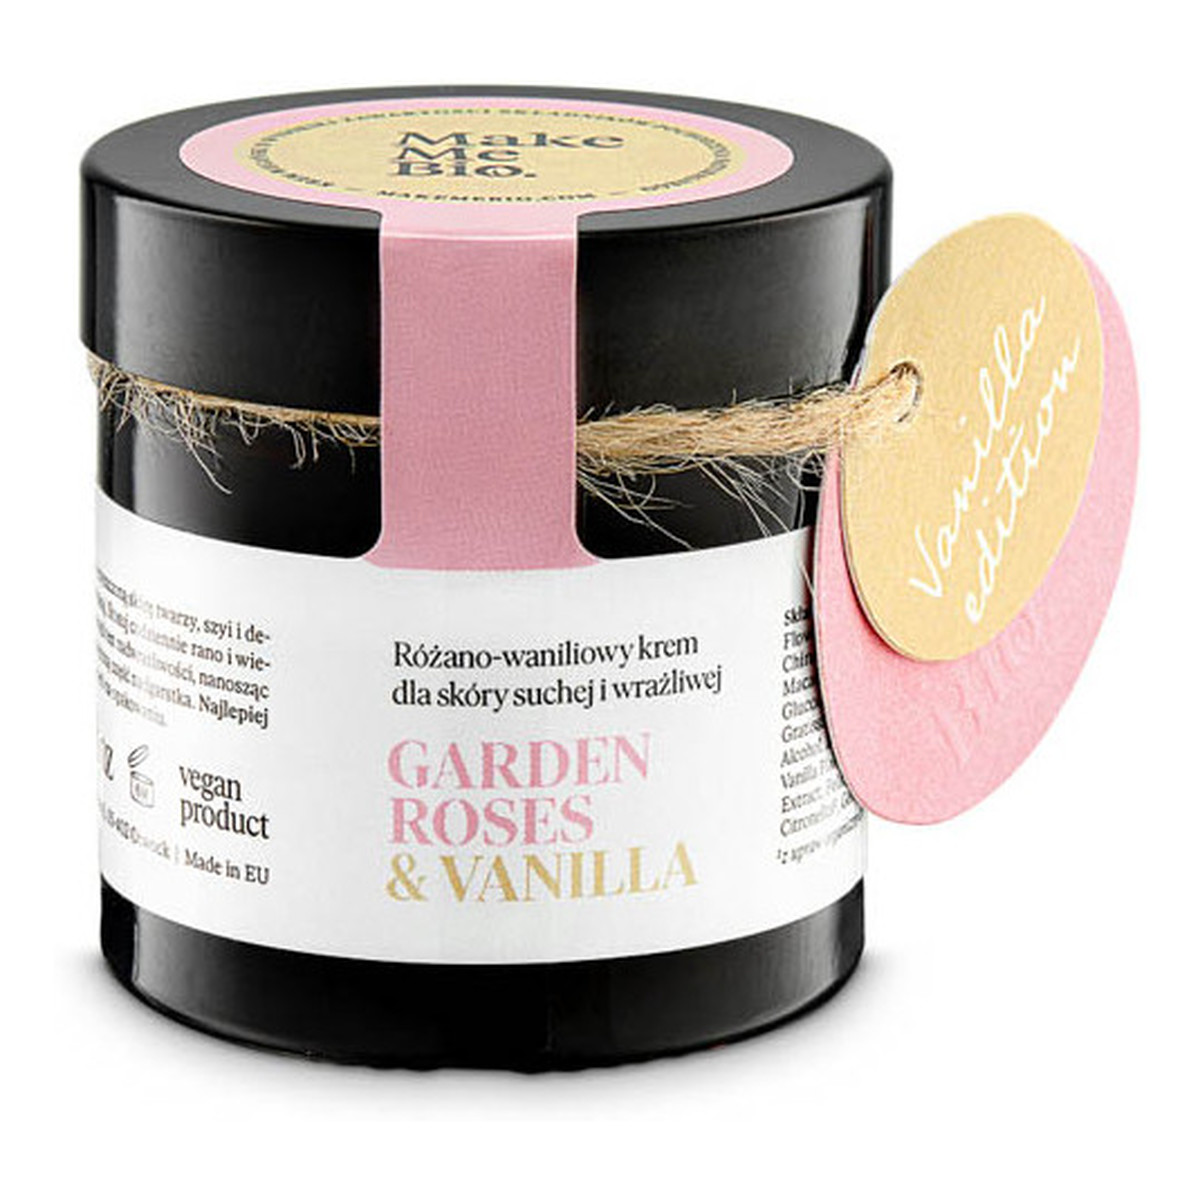 Make Me Bio Garden Roses Vanilla - Nawilżający krem różano - waniliowy dla skóry suchej i wrażliwej 60ml